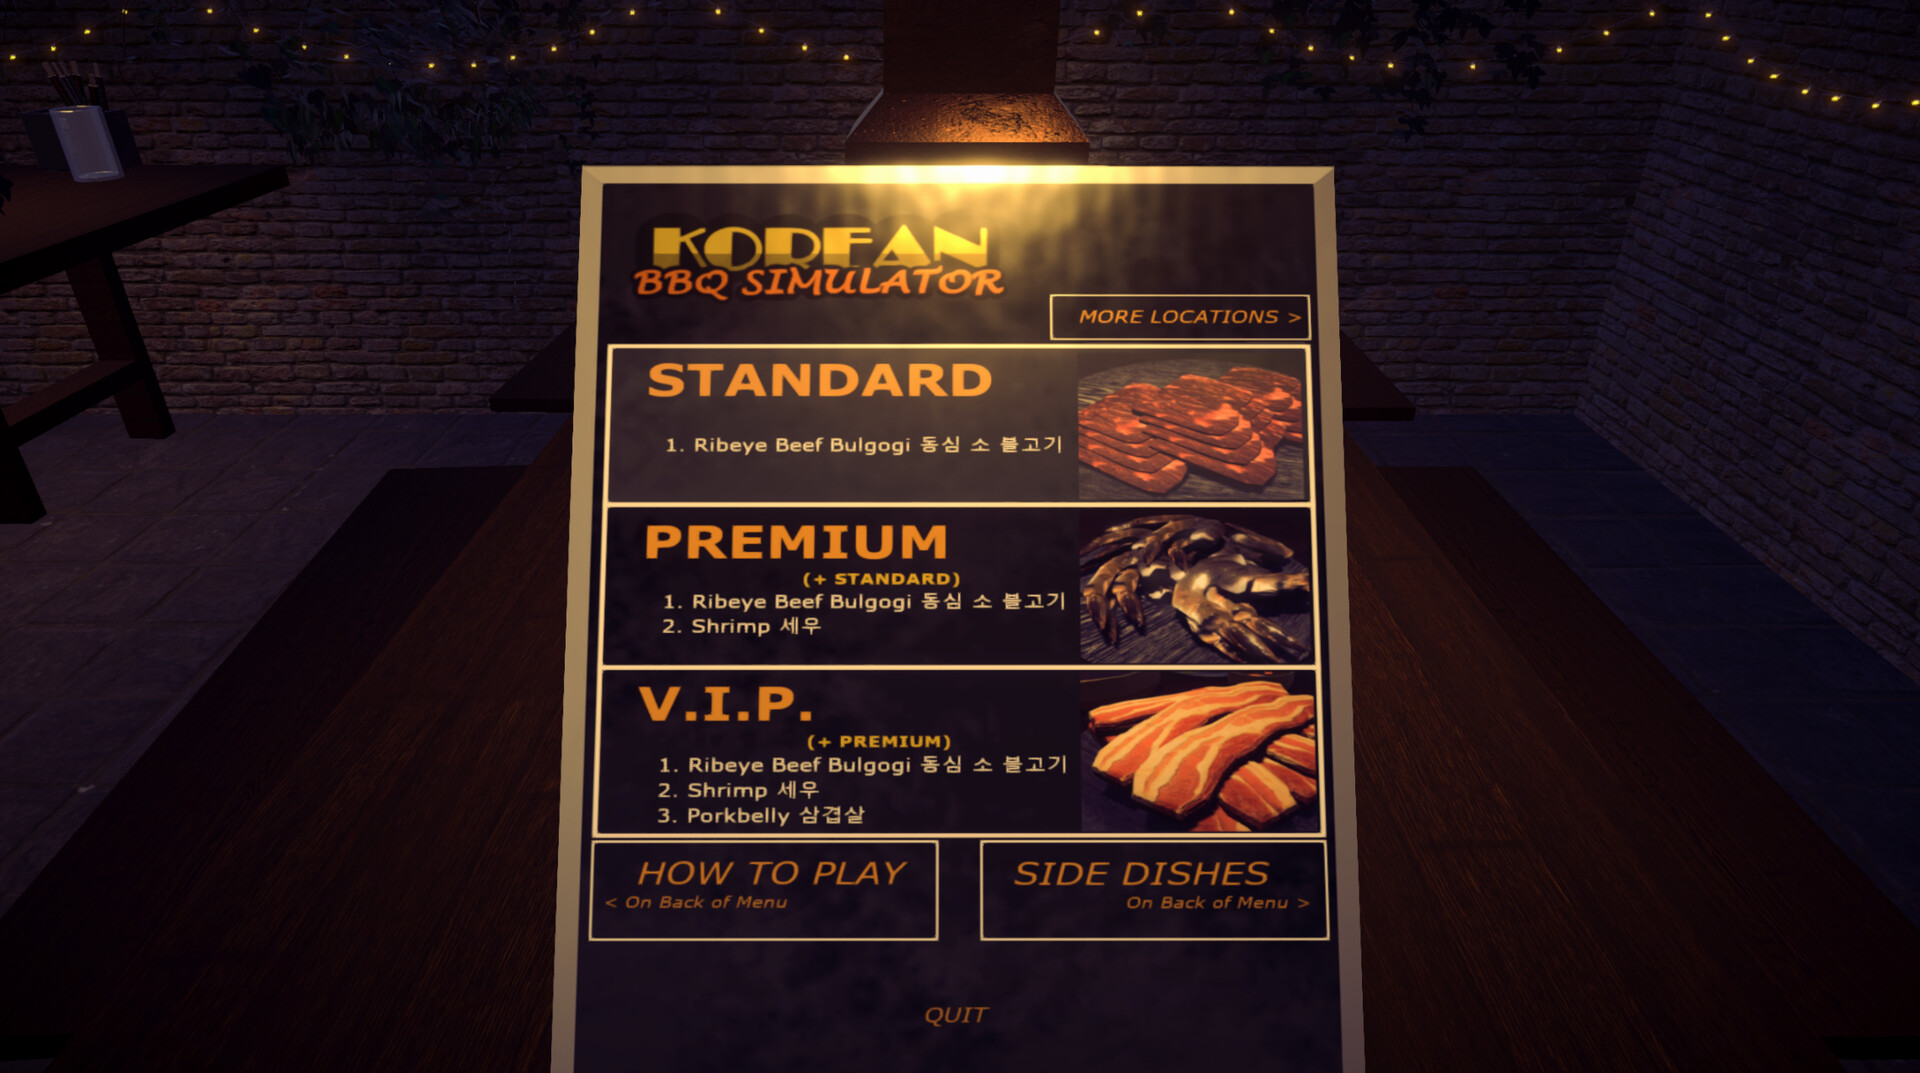 (4.42$) Korean BBQ Simulator Steam CD Key